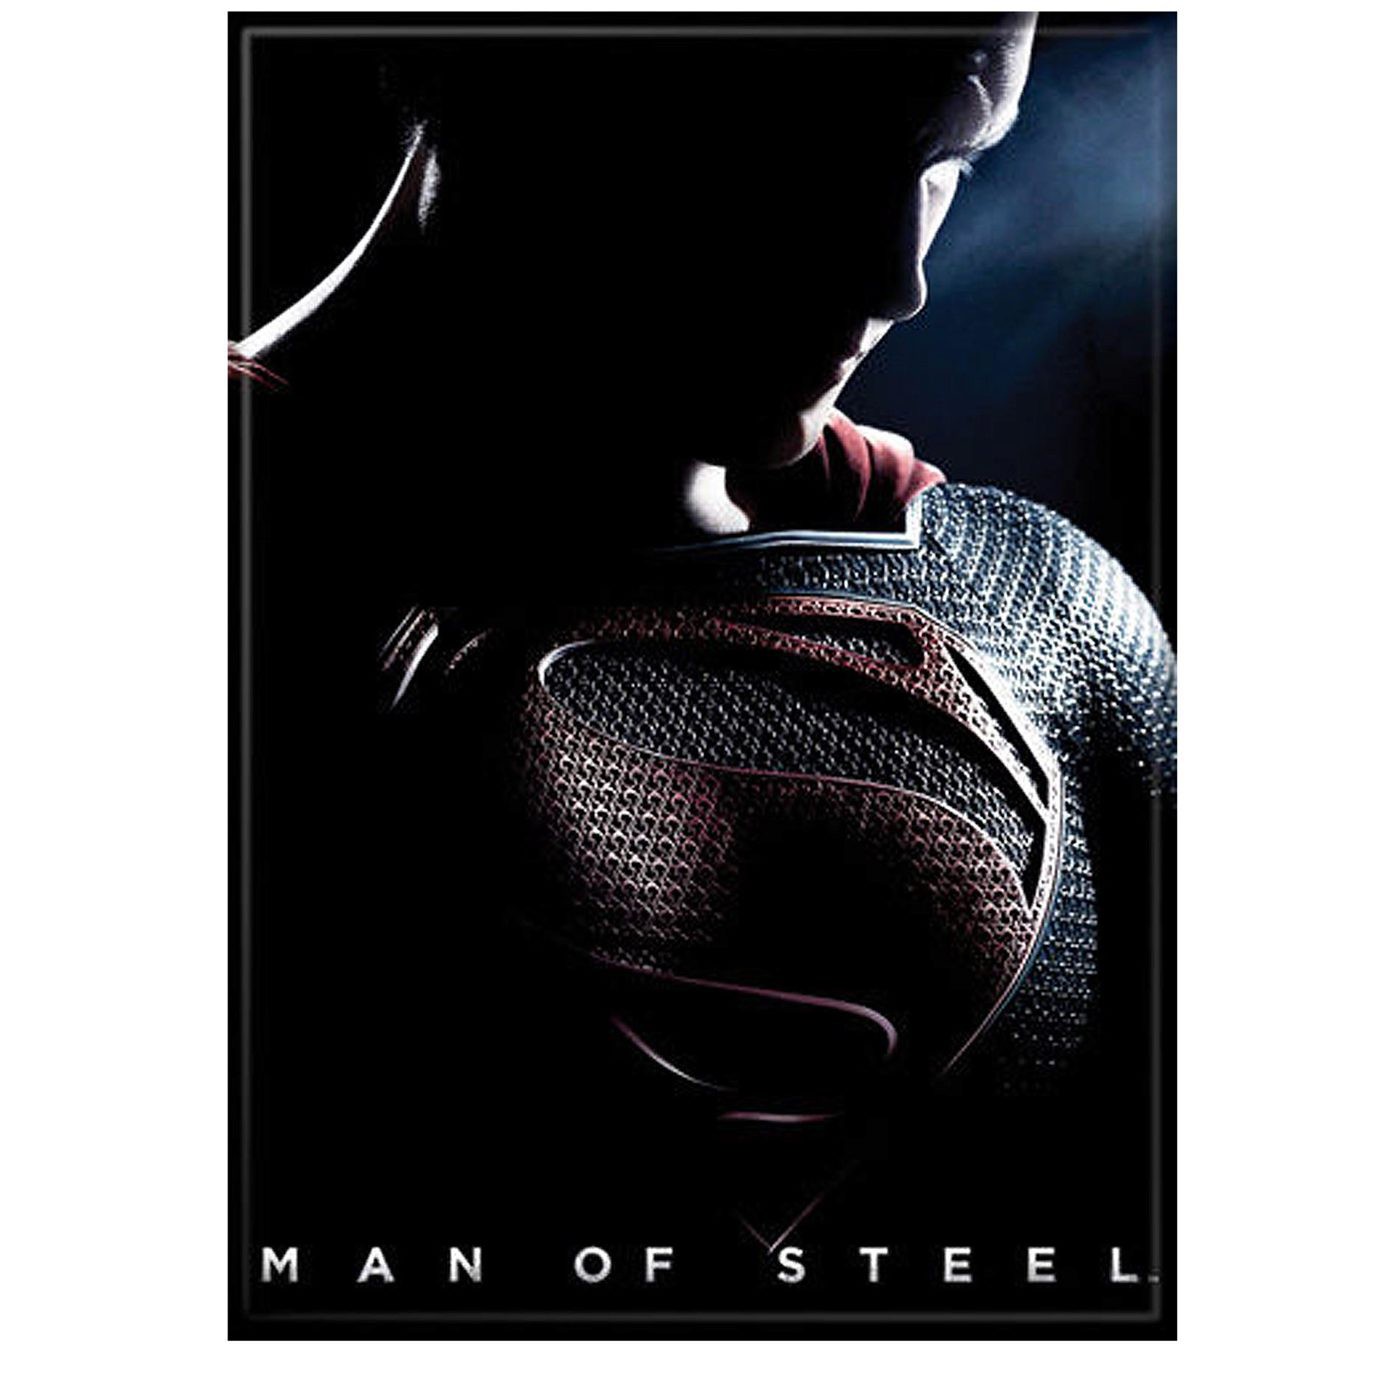 Superman Man of Steel Poster Image Magnet